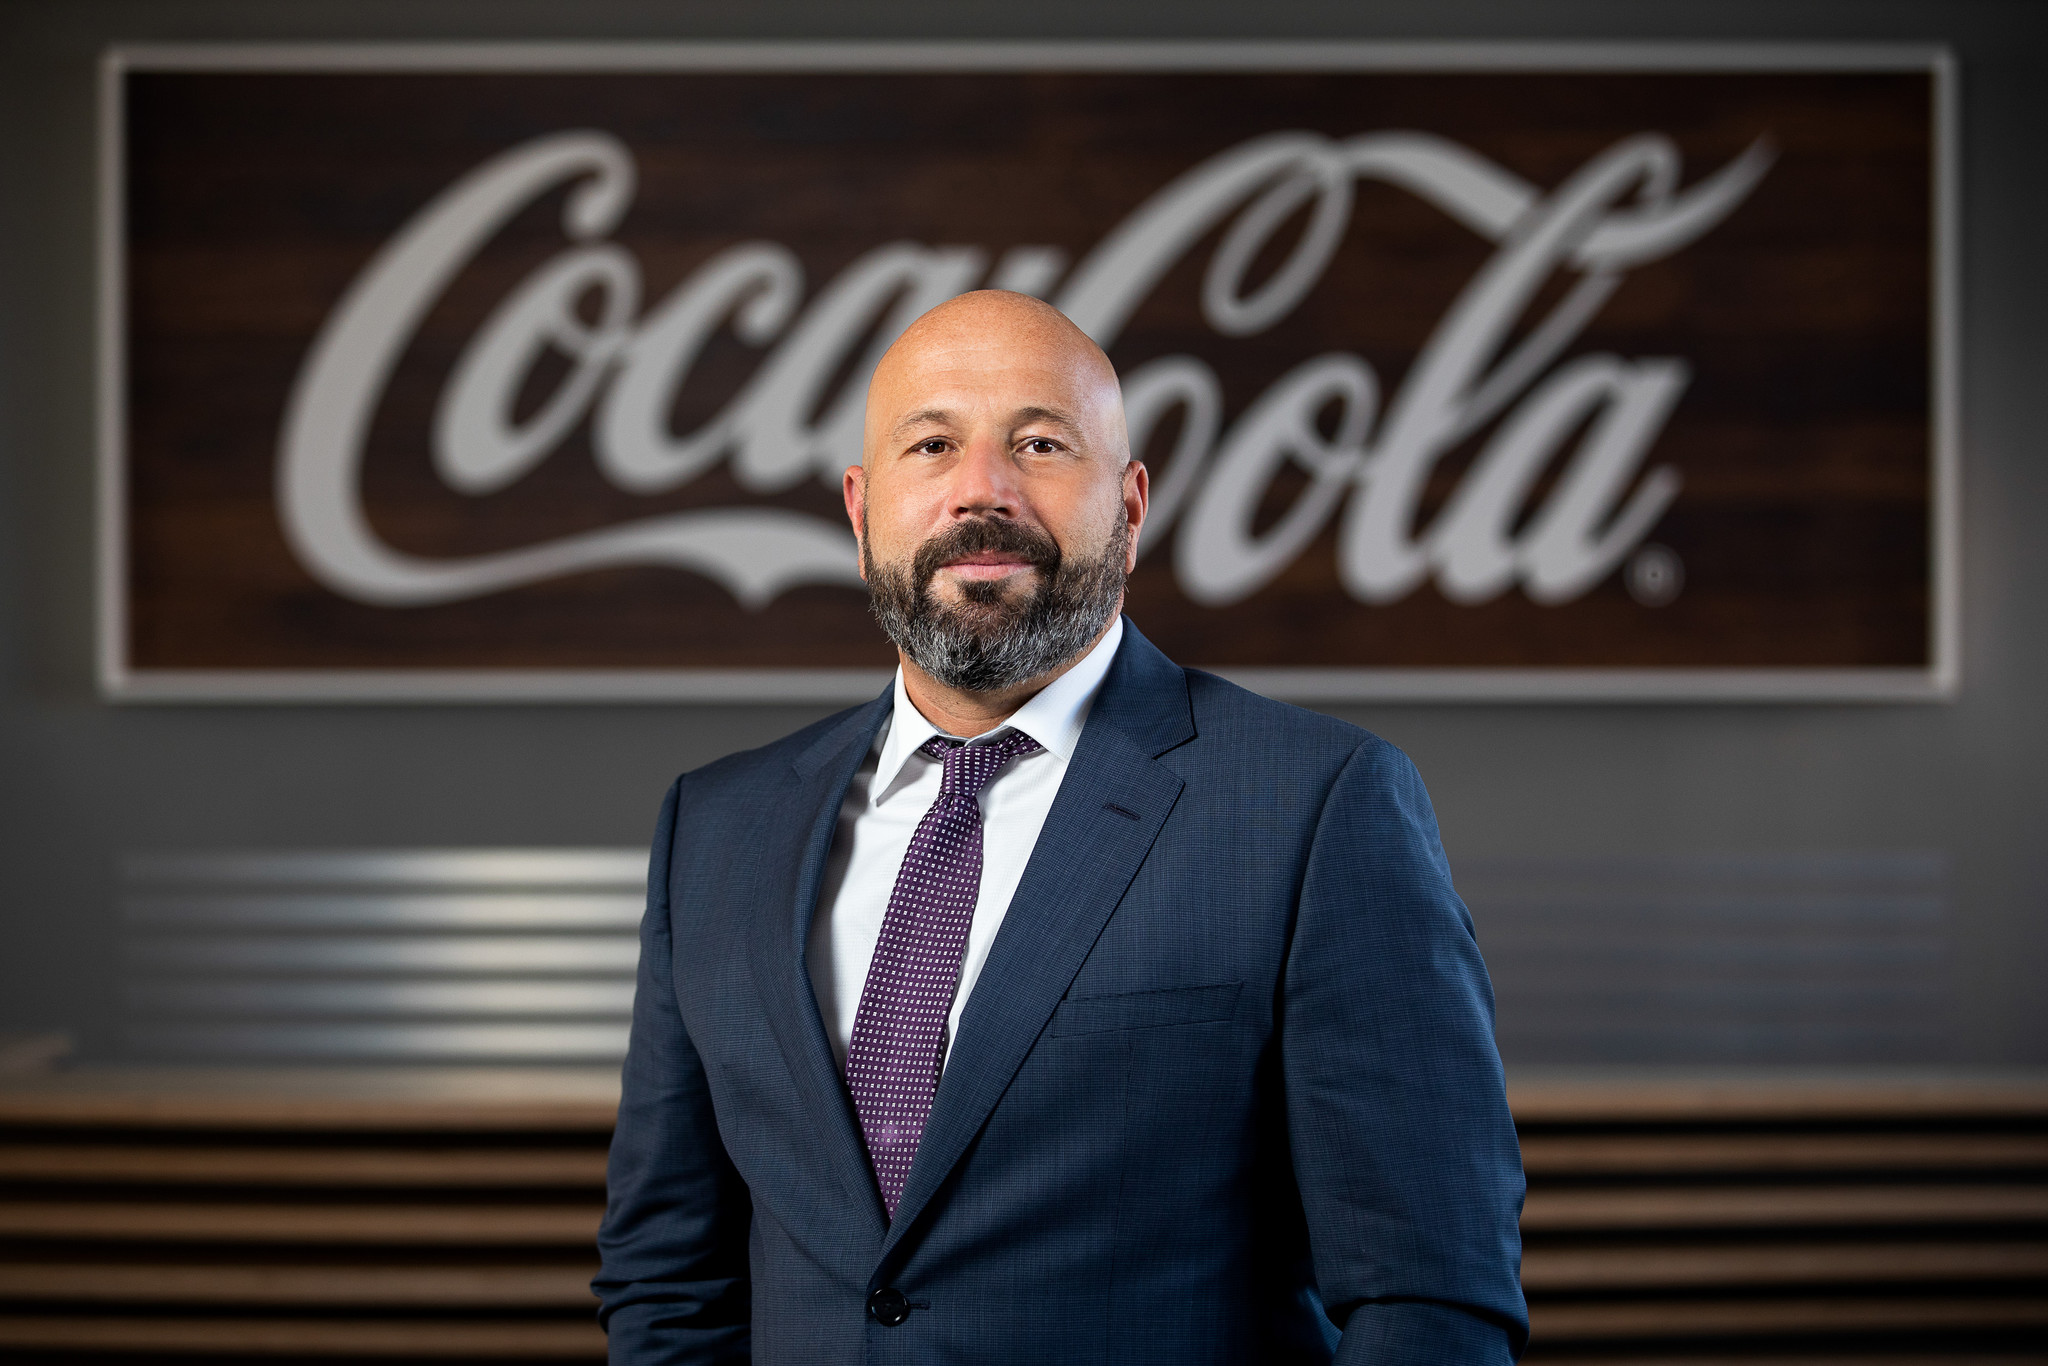 Coca-Cola Company_Magyarország_ügyvezető igazgató_Kerekes Péter